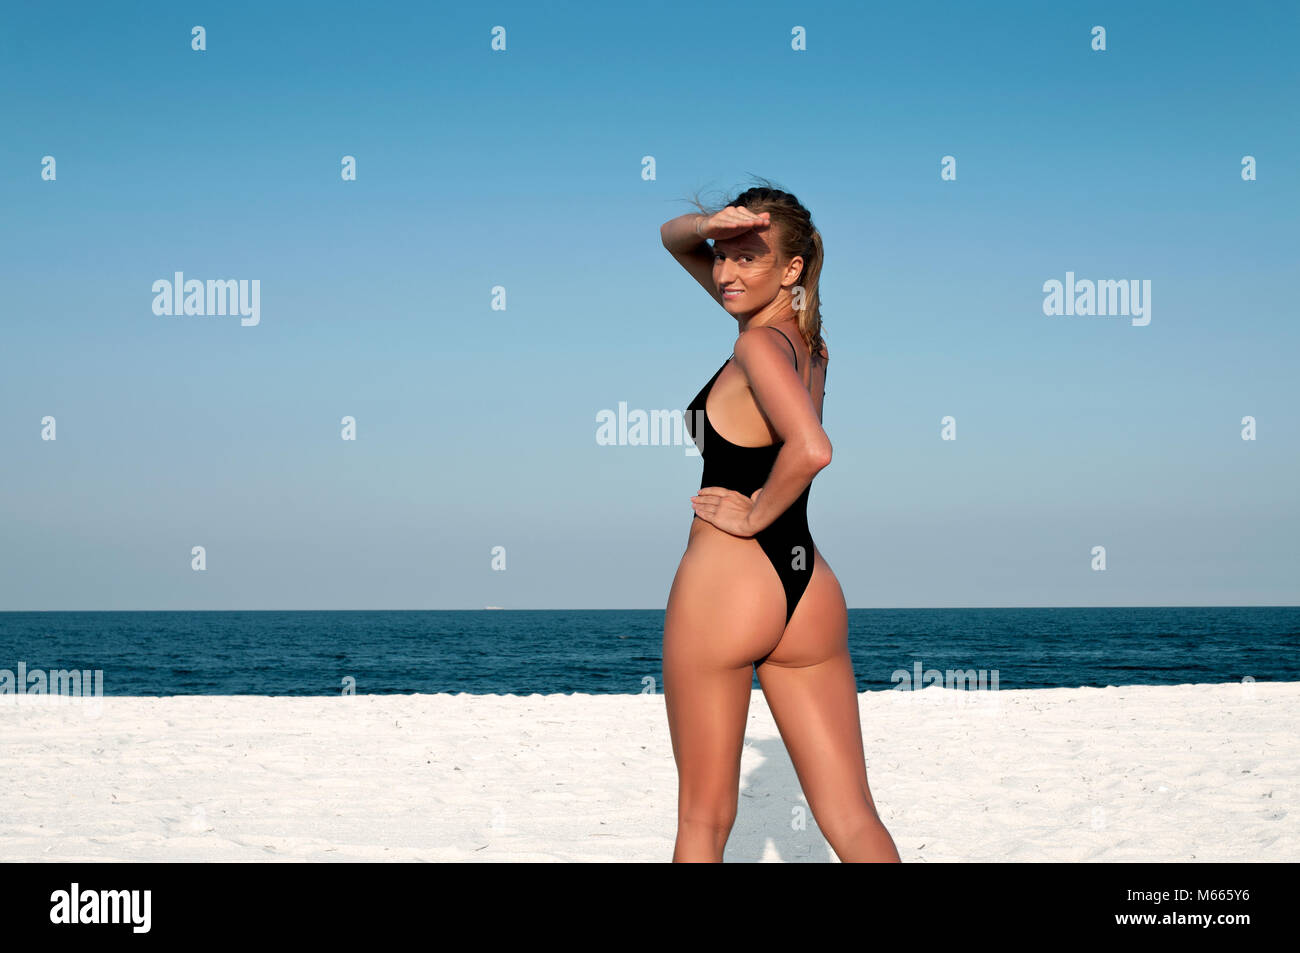 Belle femme en maillot noir sur la plage. Concept d'été Photo Stock - Alamy